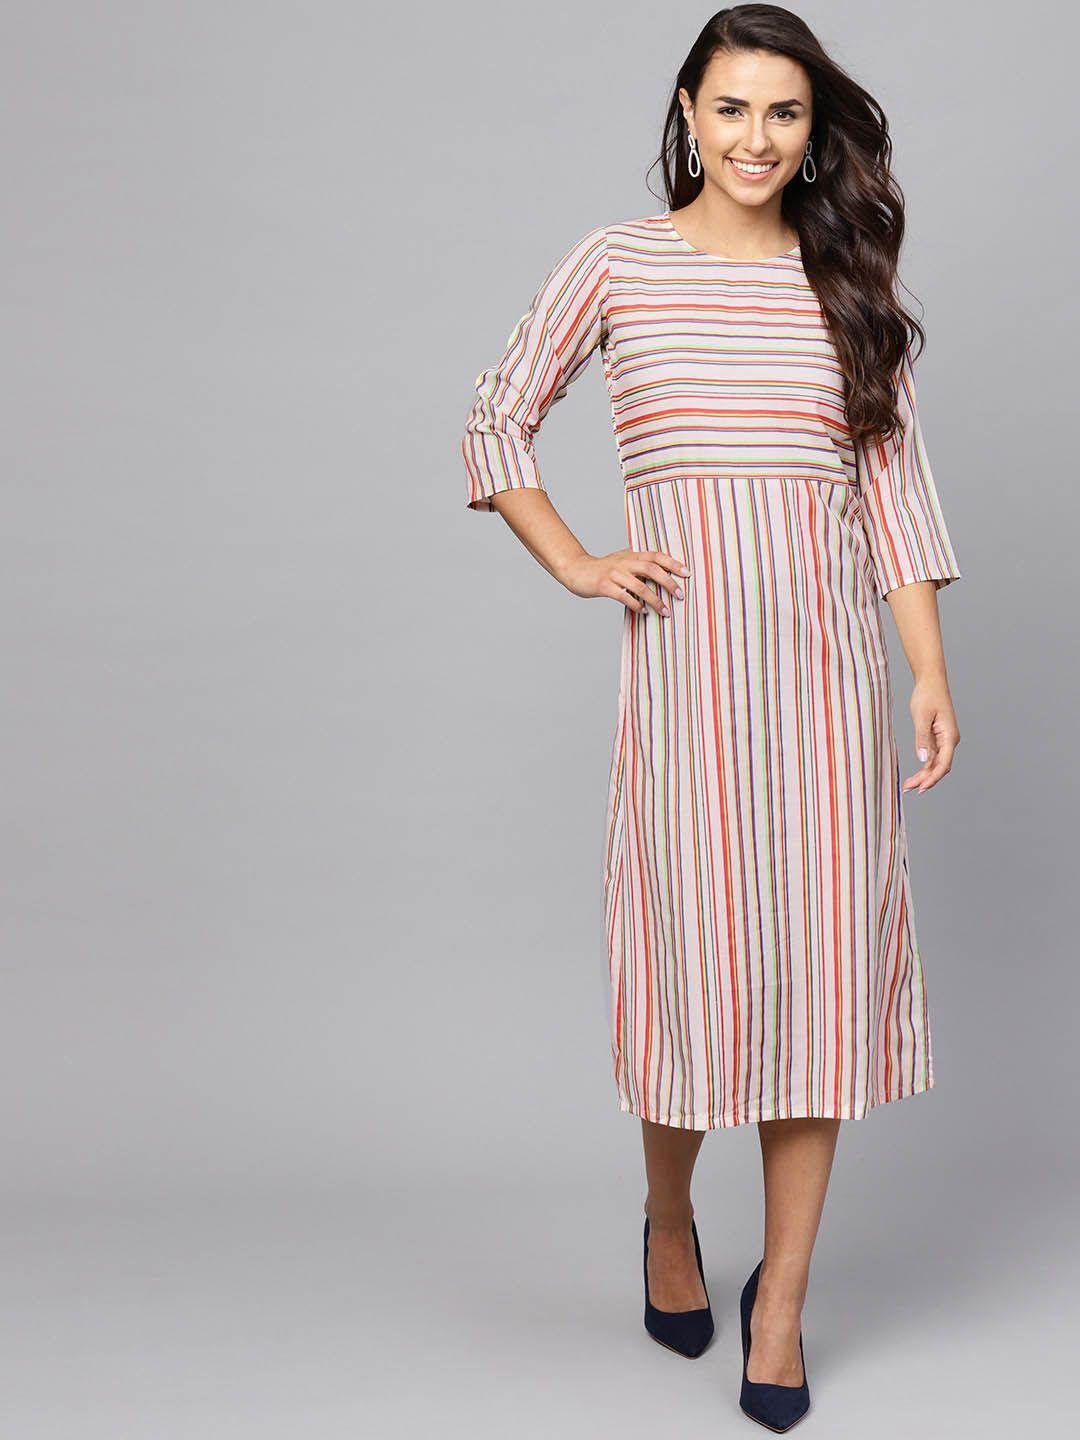 indo-era-women-cream-coloured-candy-striped-a-line-dress